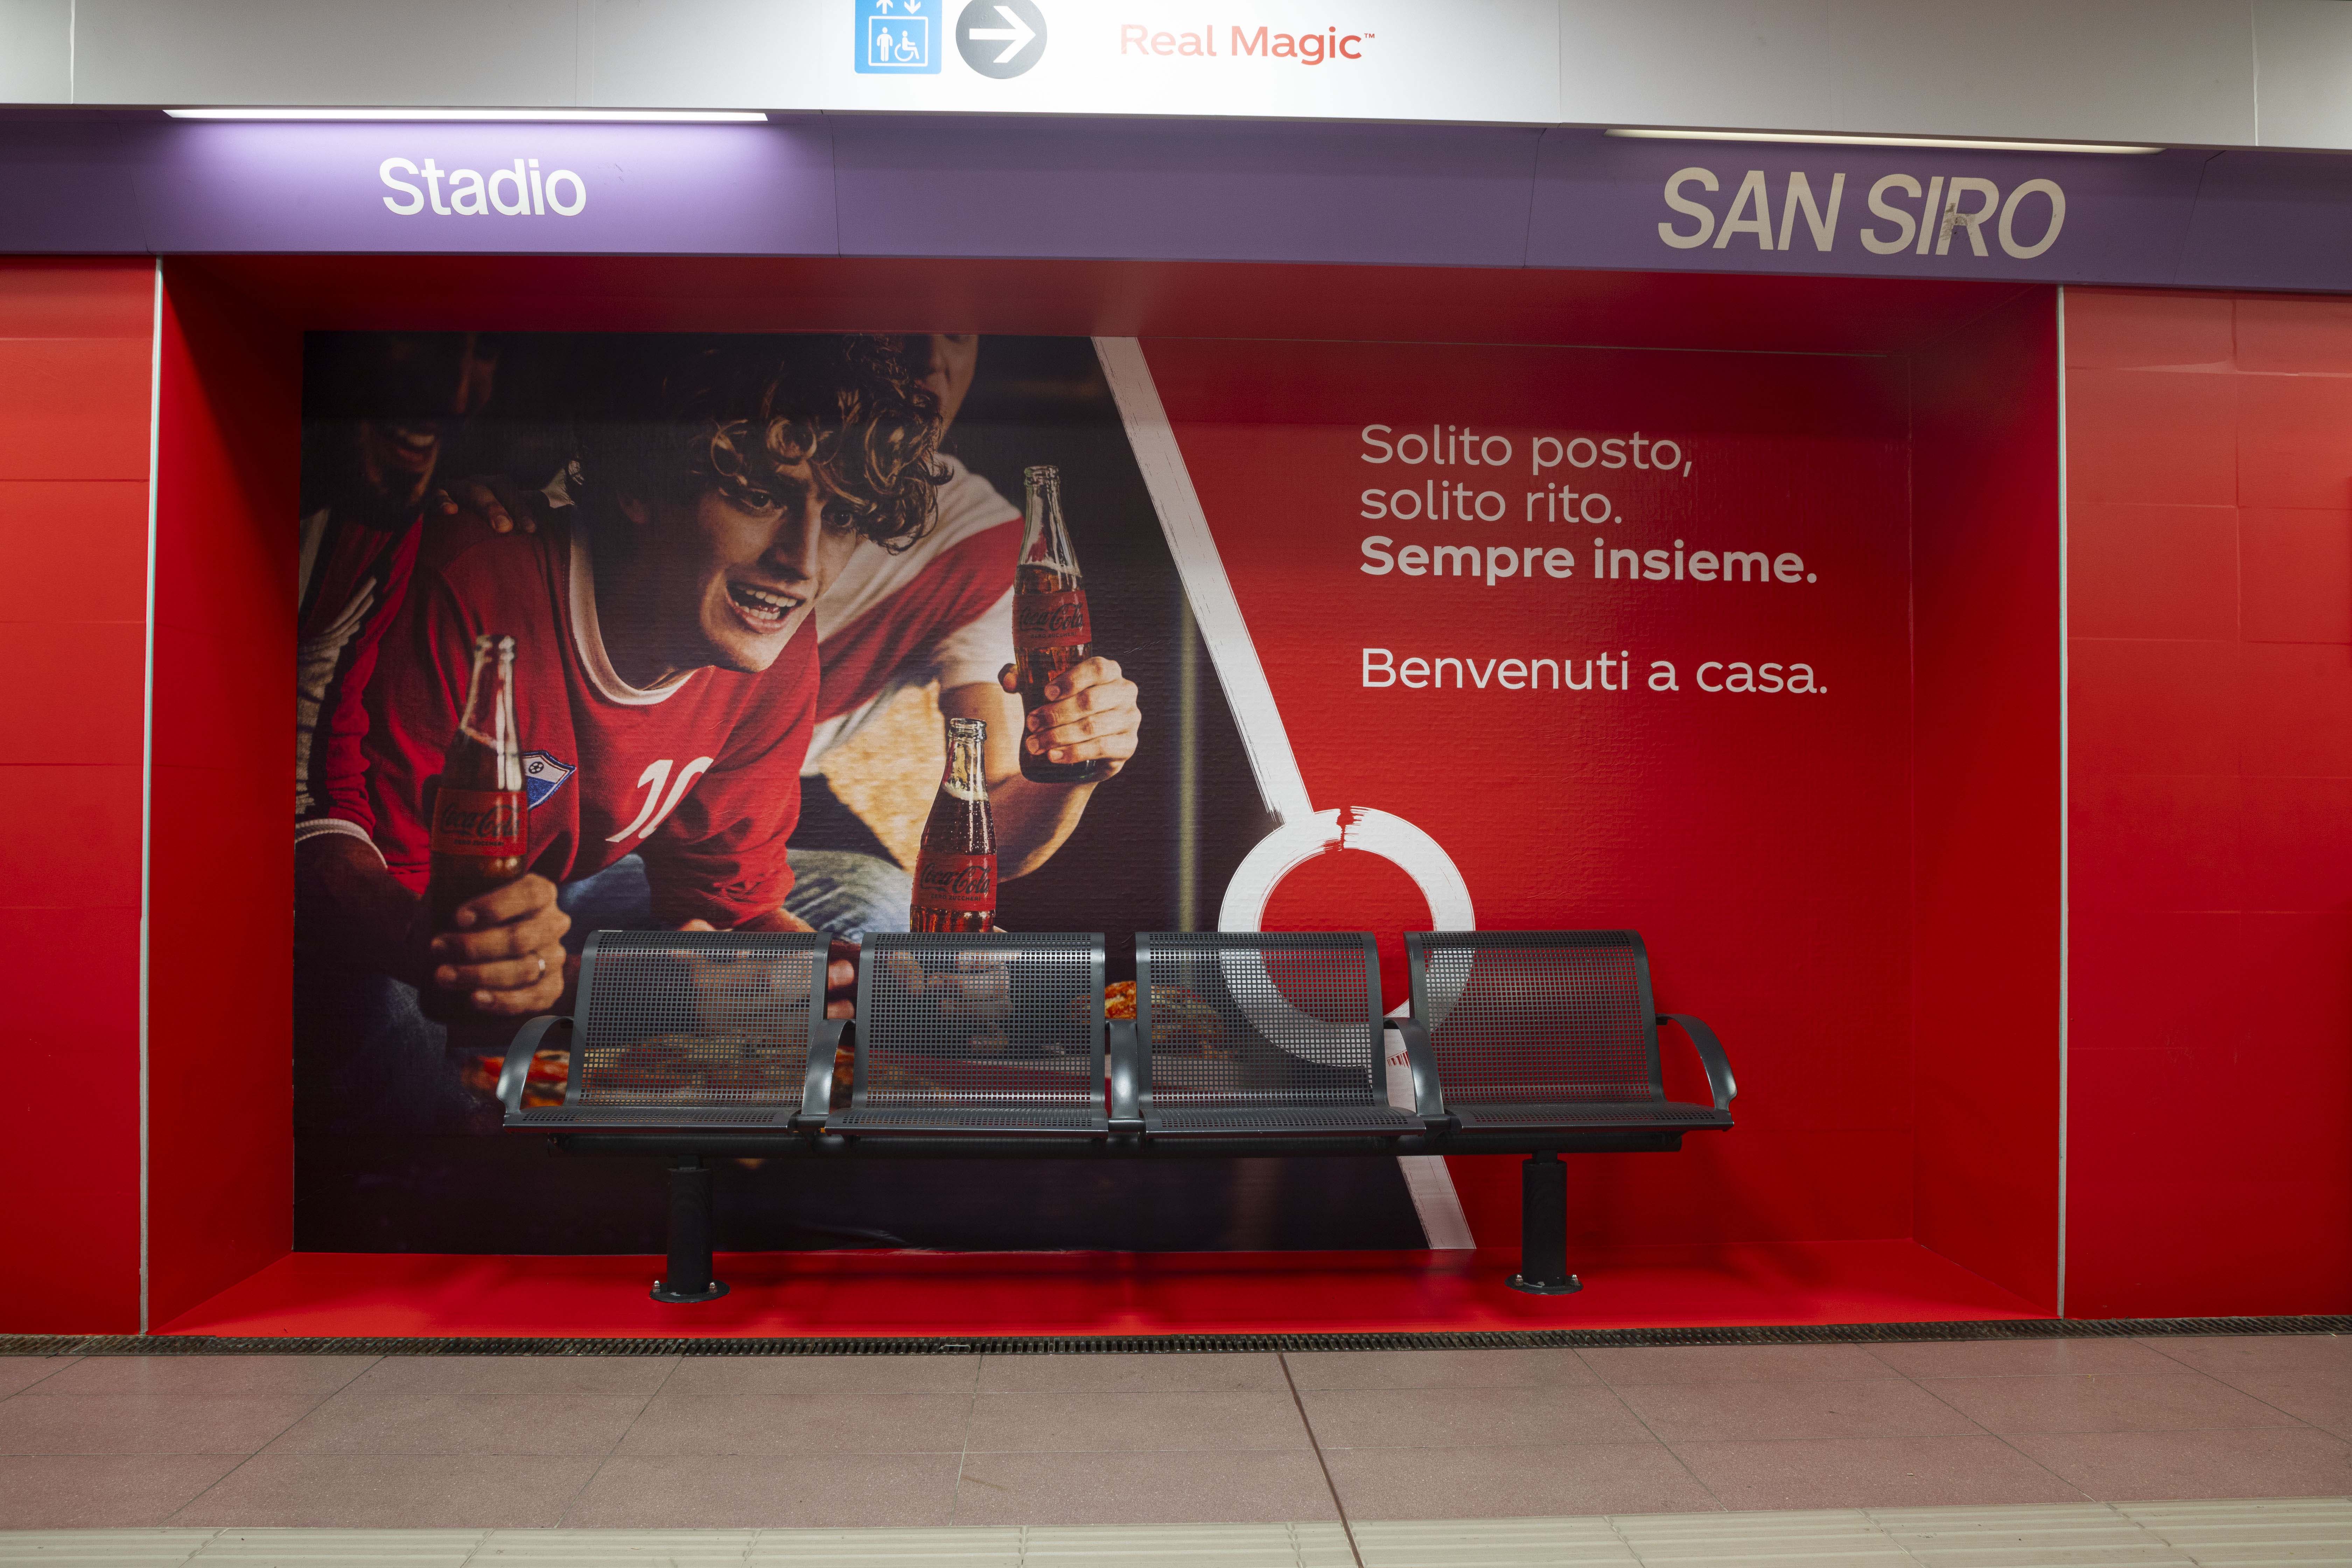 Coca-Cola è il nuovo sponsor della fermata “San Siro Stadio” della Linea 5 della Metropolitana di Milano